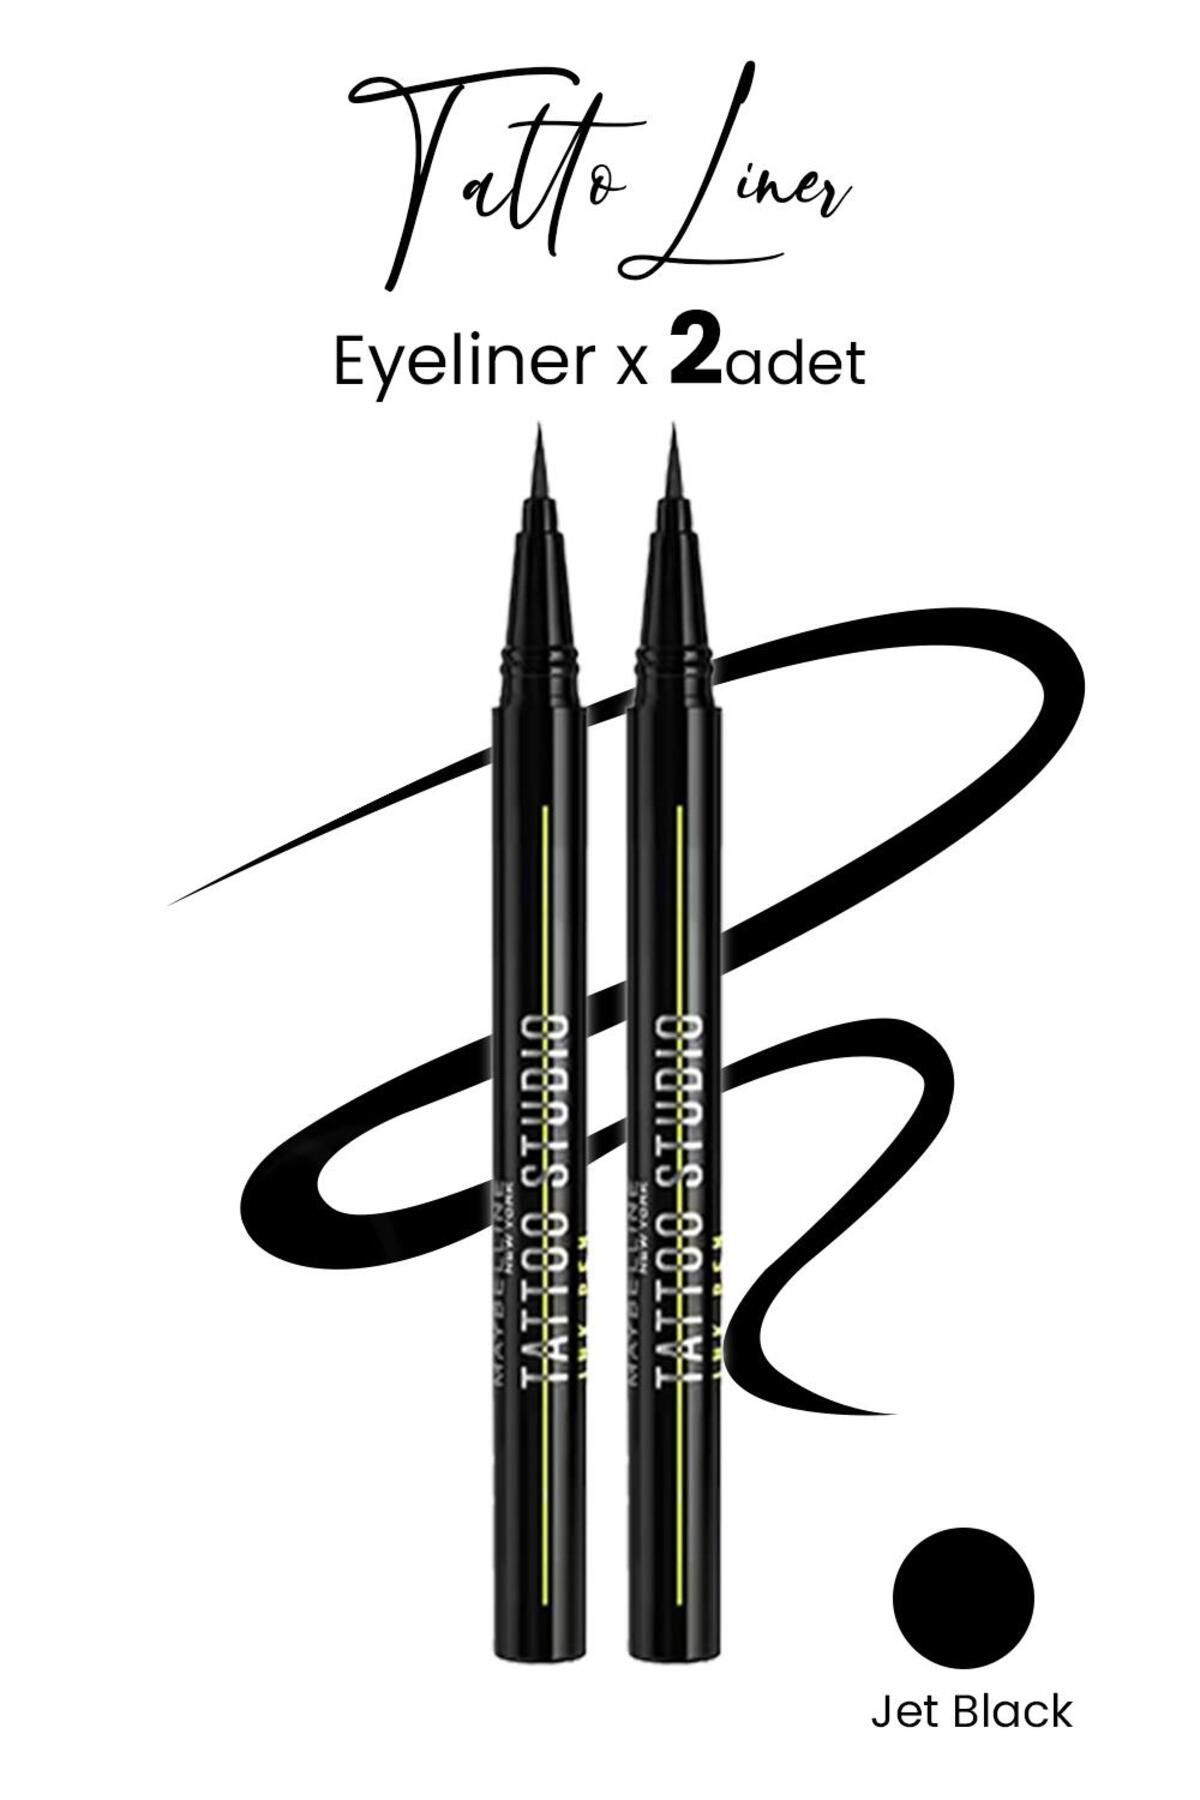 Maybelline New York Maybelline Tattoo Liner Ink Pen Eyeliner - Jet Black X 2 Adet